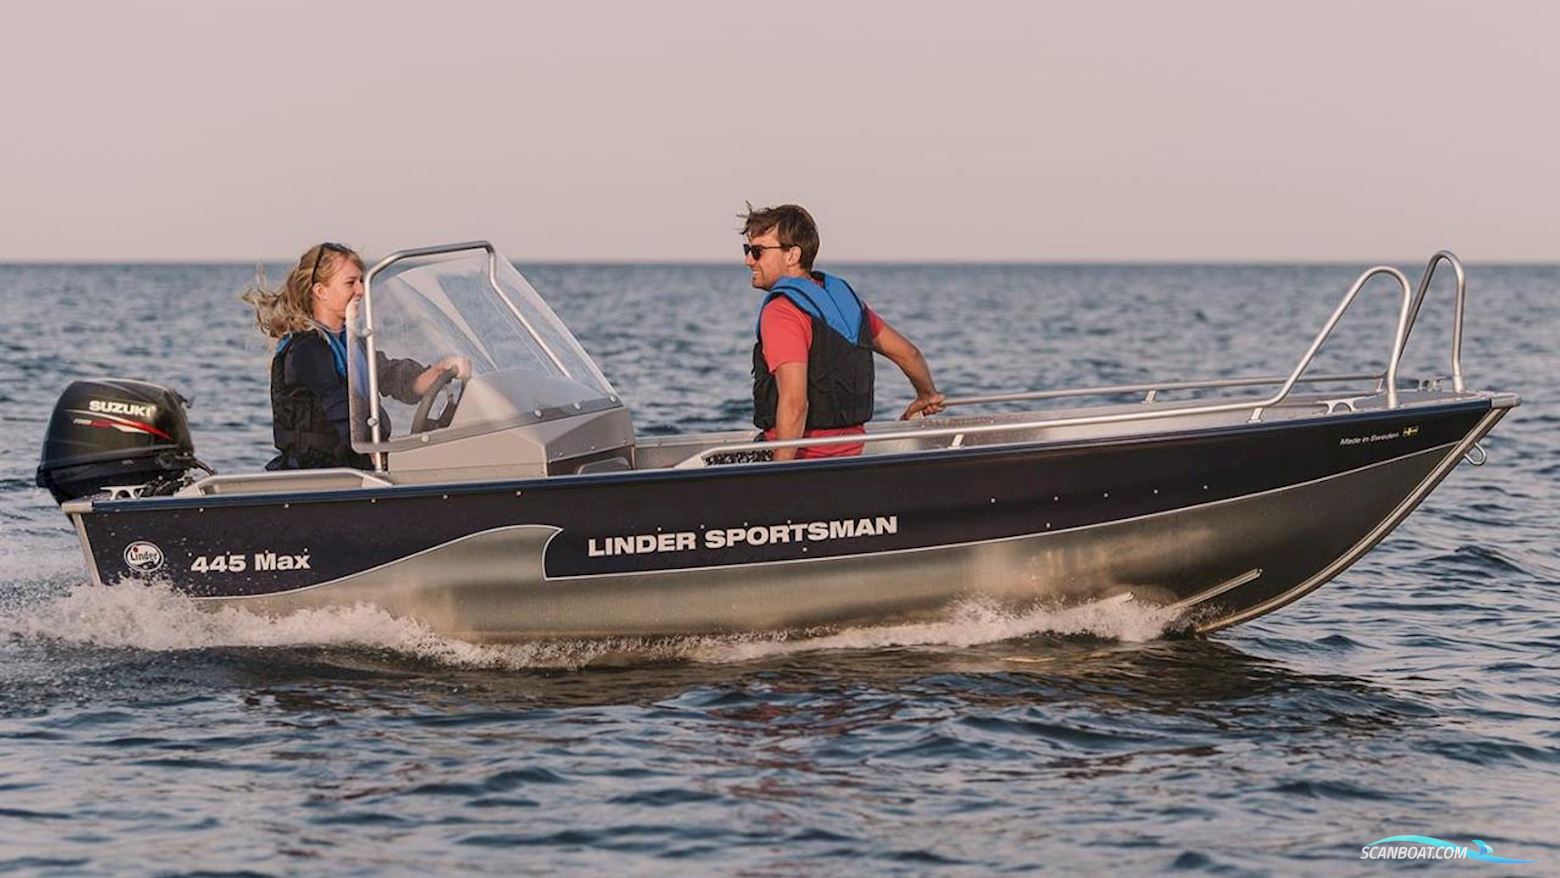 LINDER SPORTSMAN 445 MAX Motorboot 2022, mit Suzuki motor, Sweden